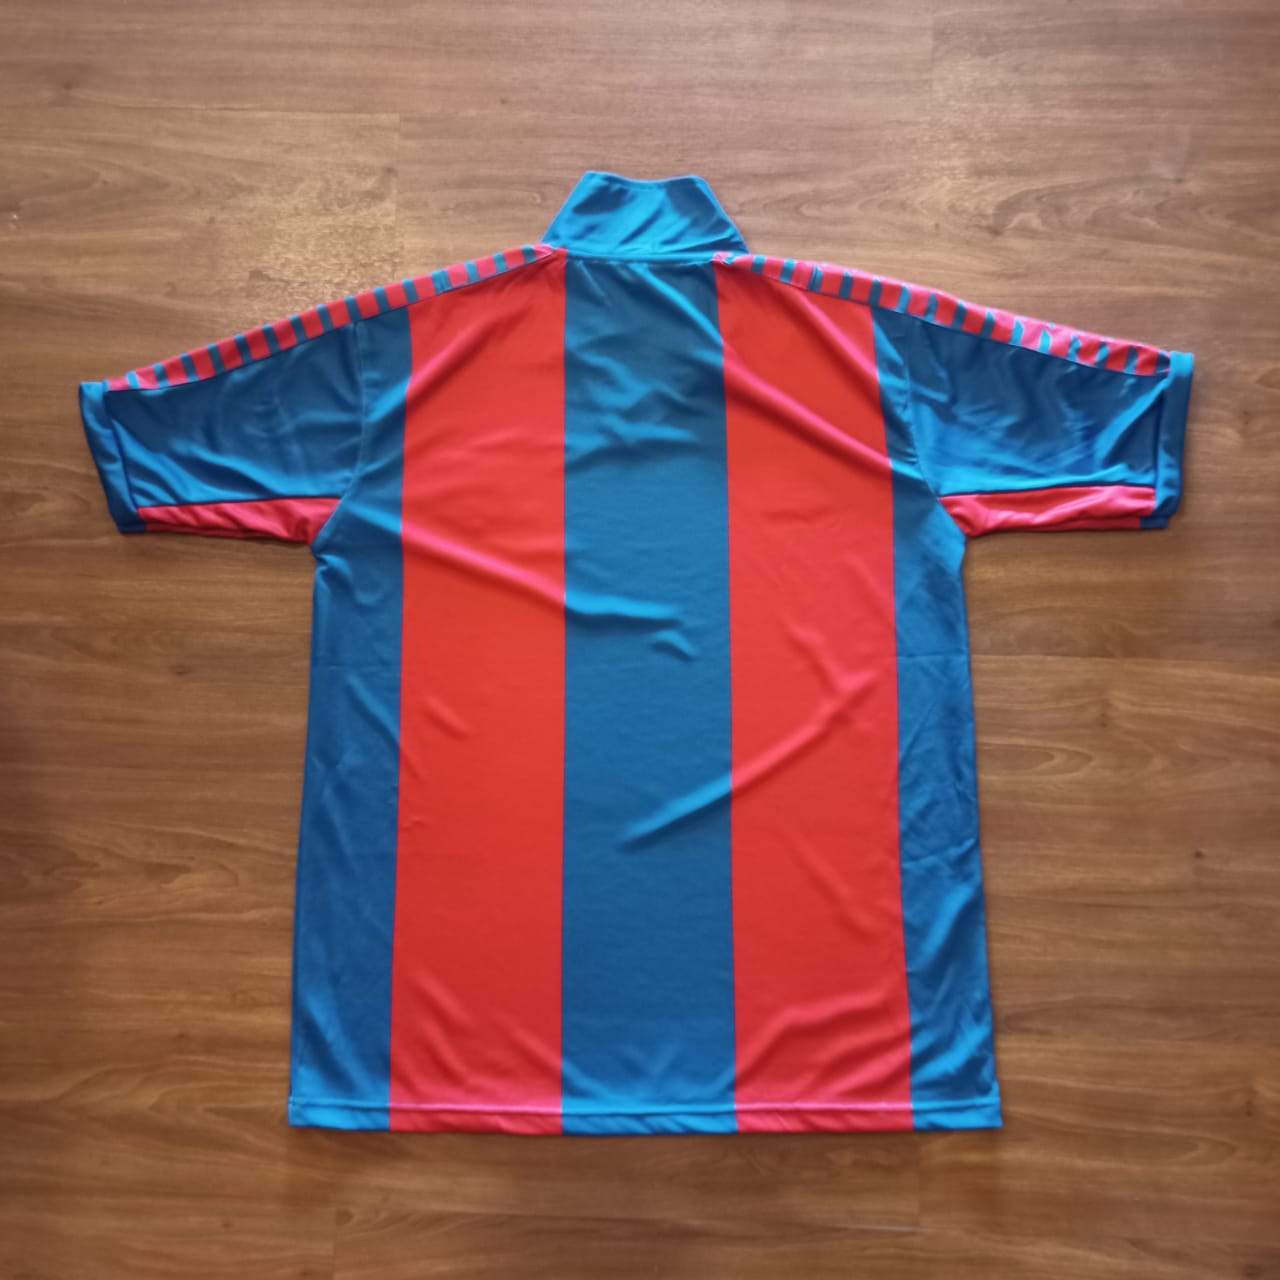 Atlético Madrid 1985-86 Camiseta Fútbol Retro